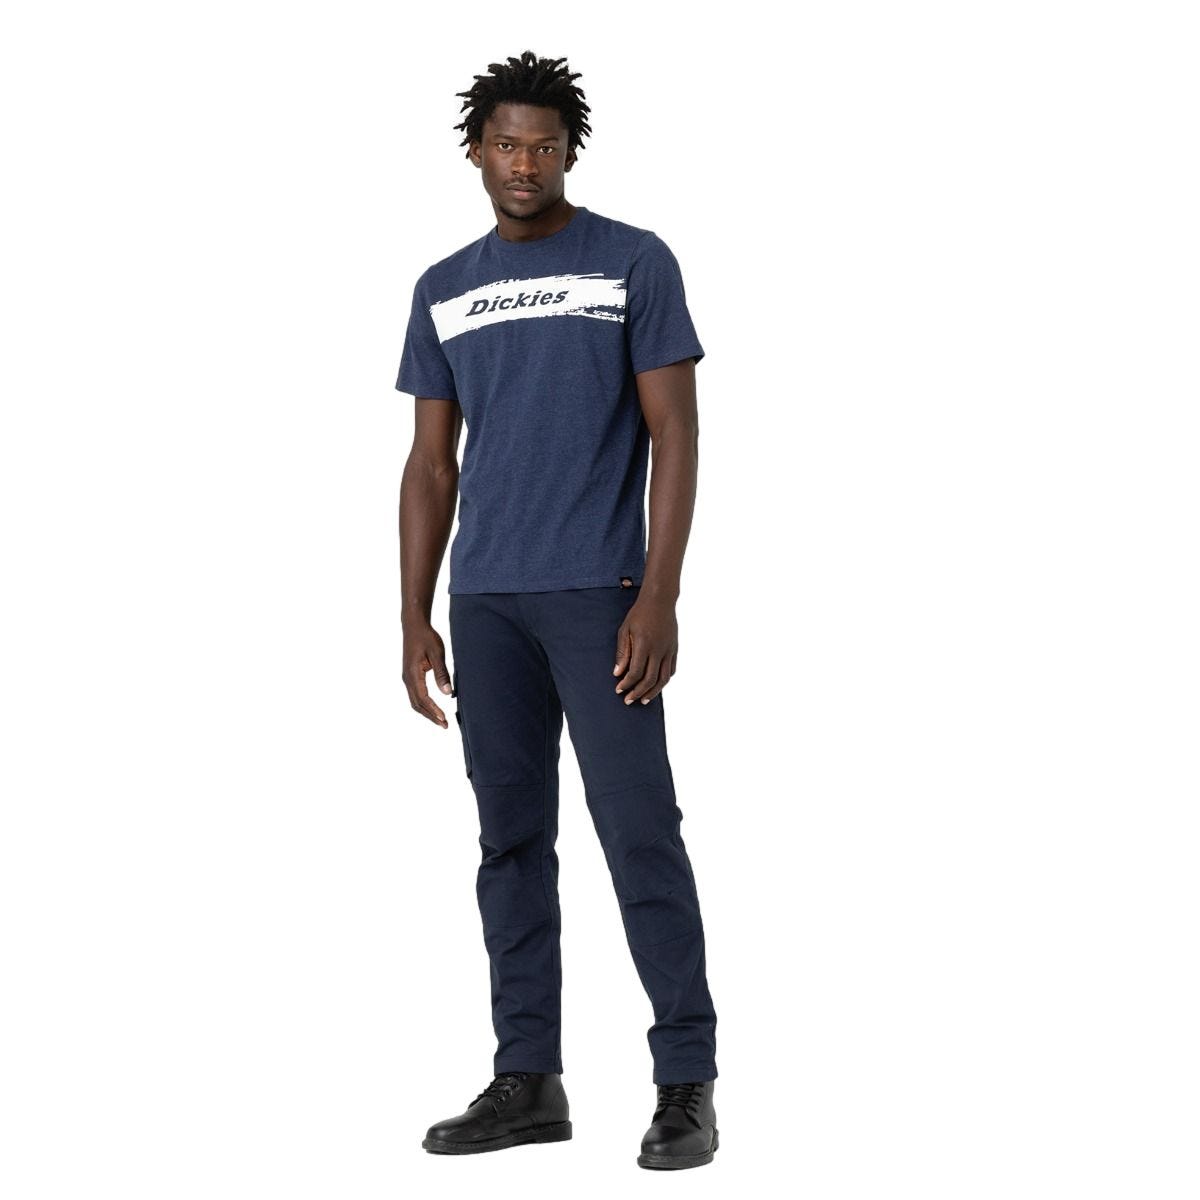 T-shirt à manches courtes pour homme Stanton bleu marine - Dickies - Taille 3XL 2